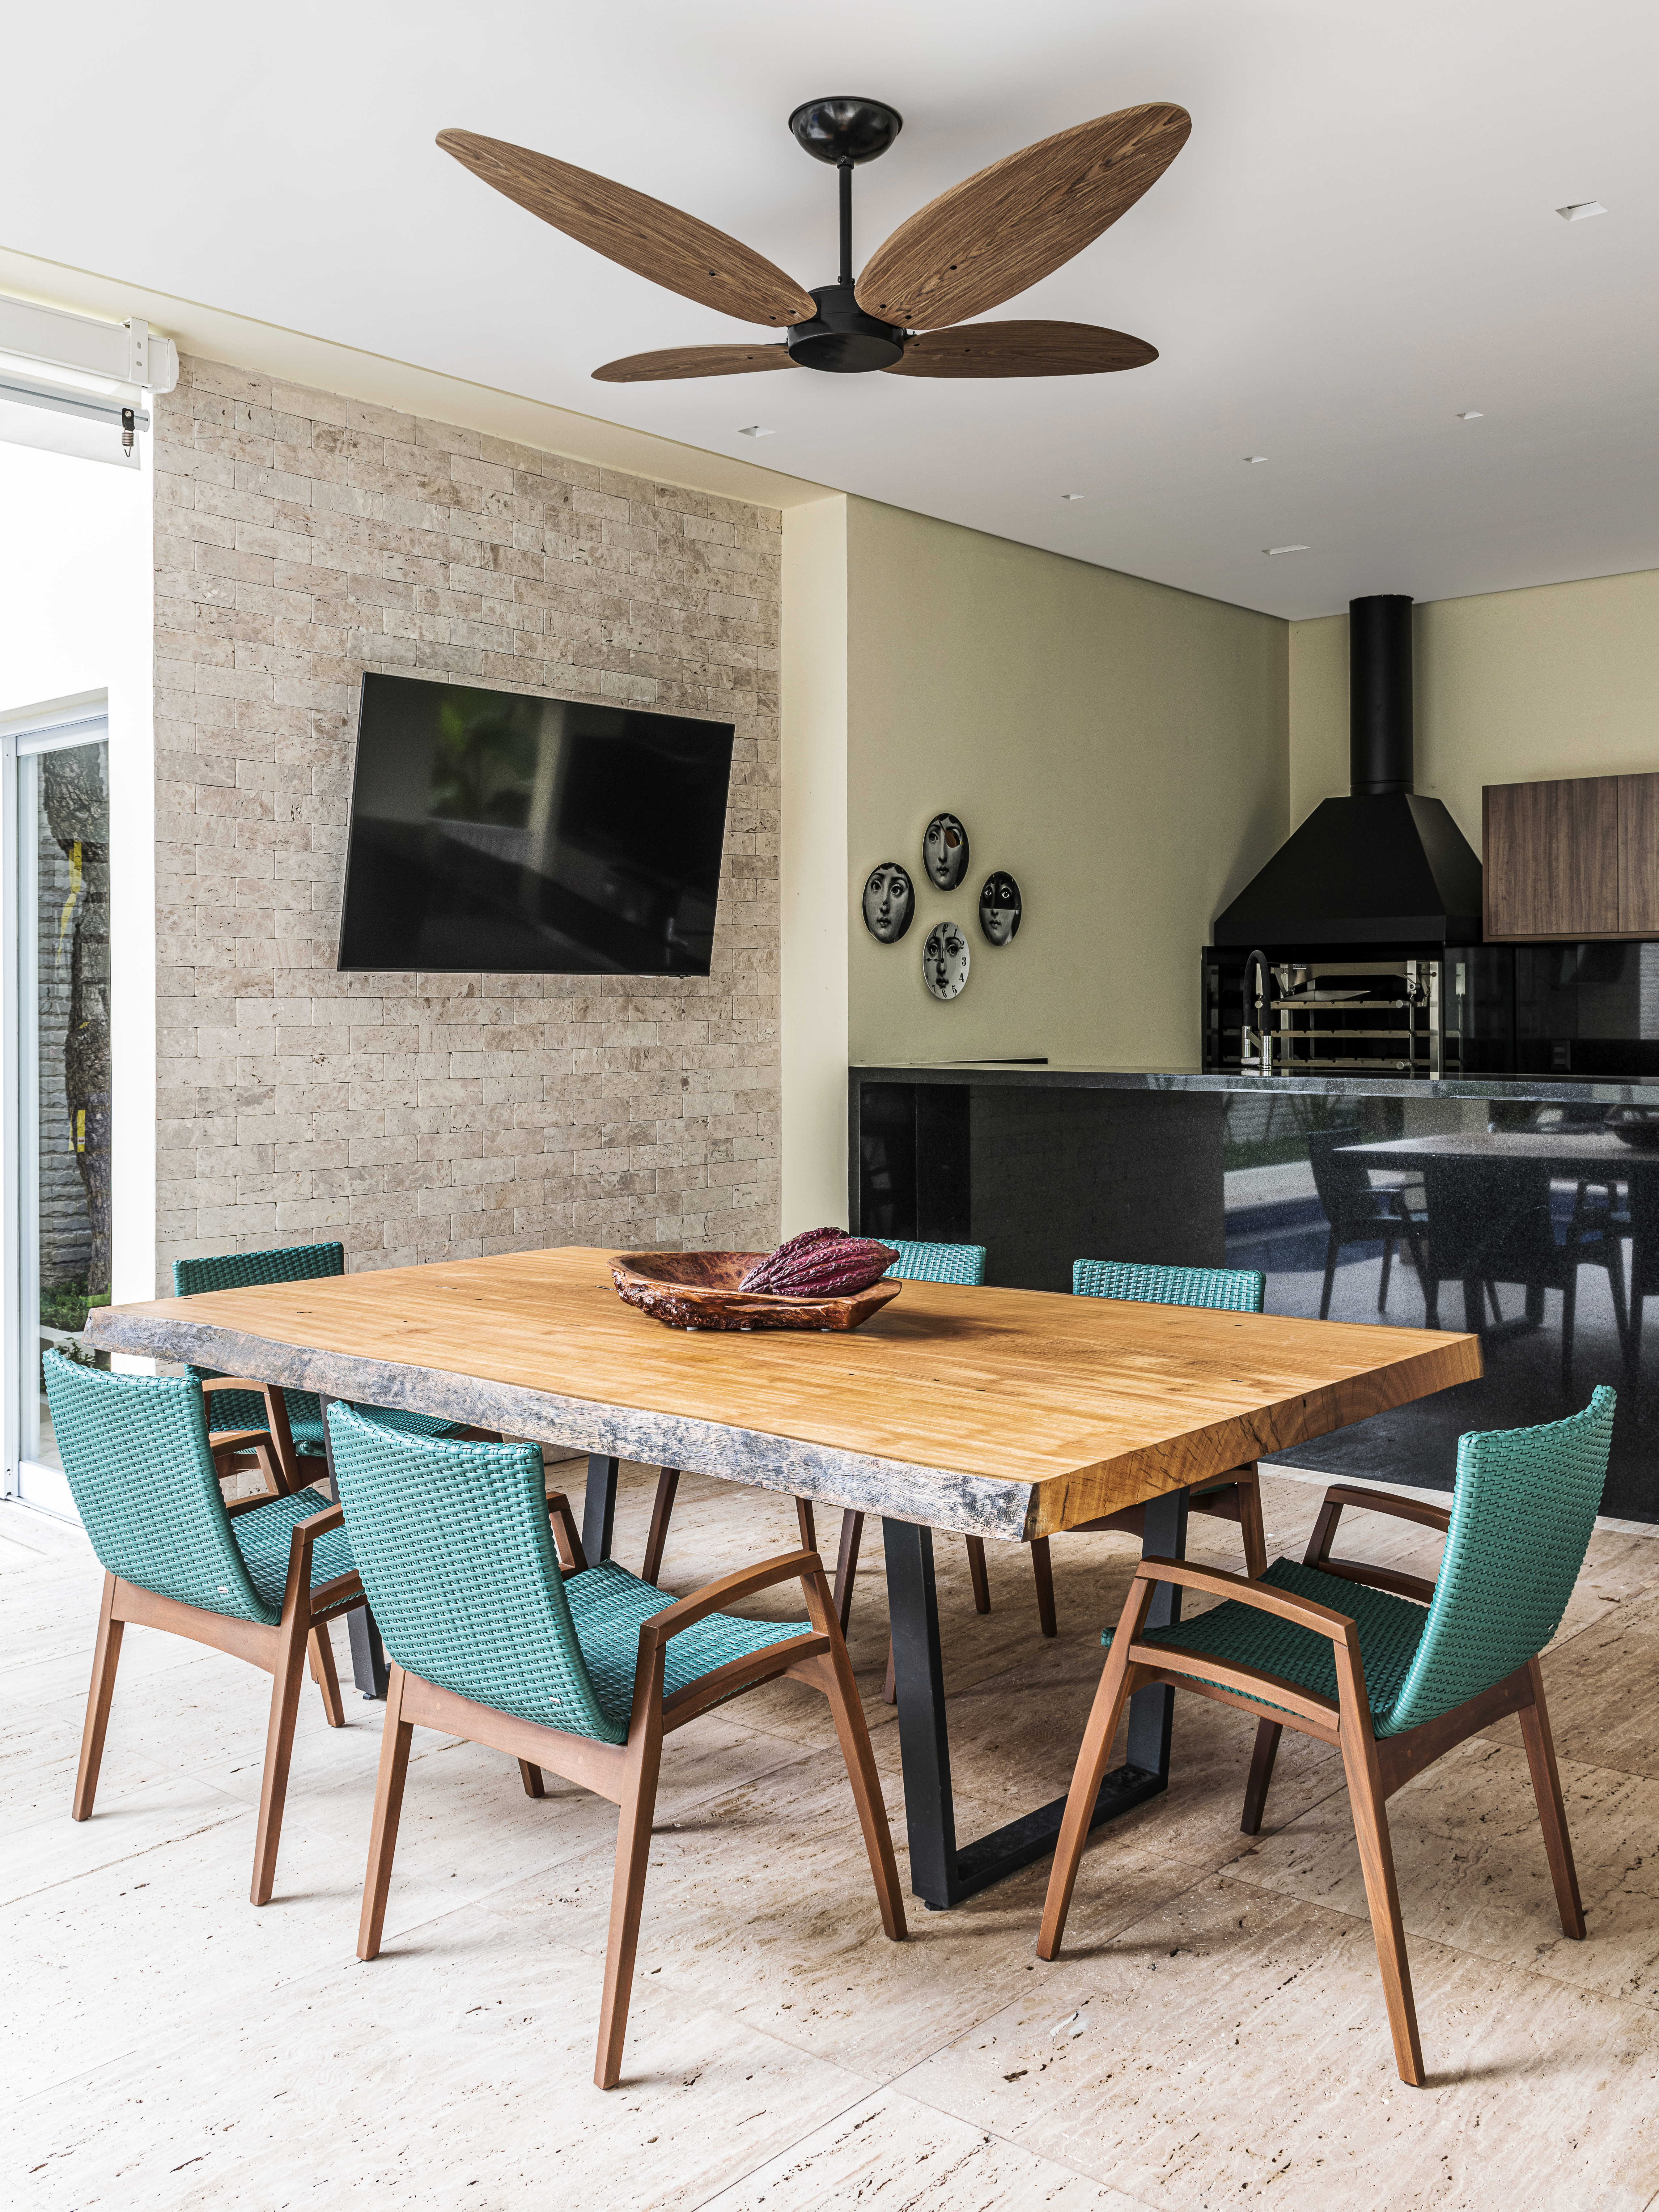 Área gourmet com churrasqueira, mesa com tampo de madeira e cadeiras azul esverdeadas.